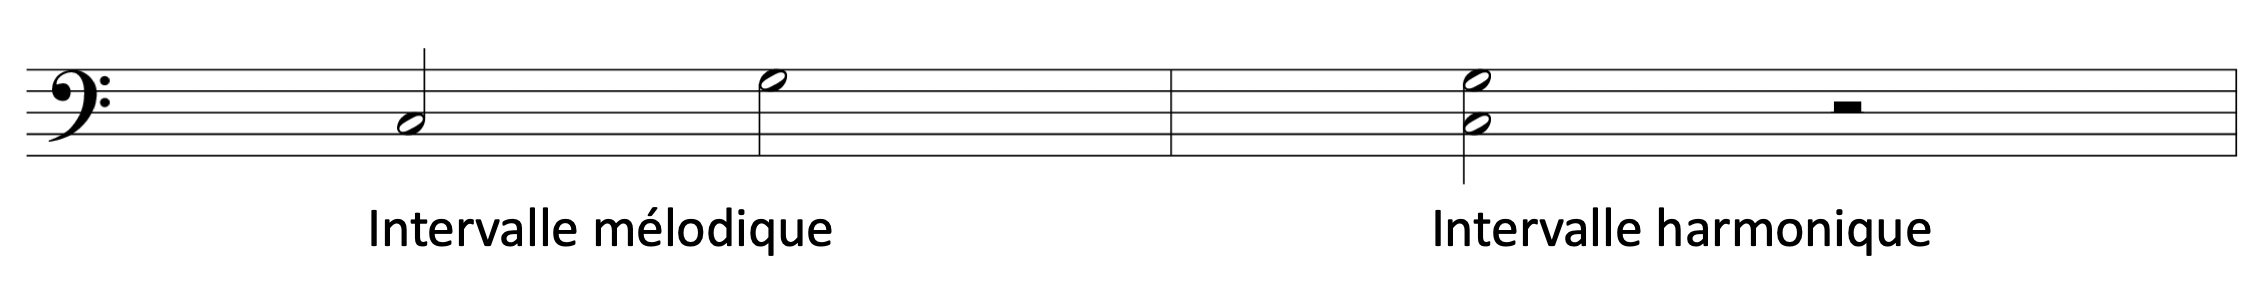 intervalle melodique harmonique